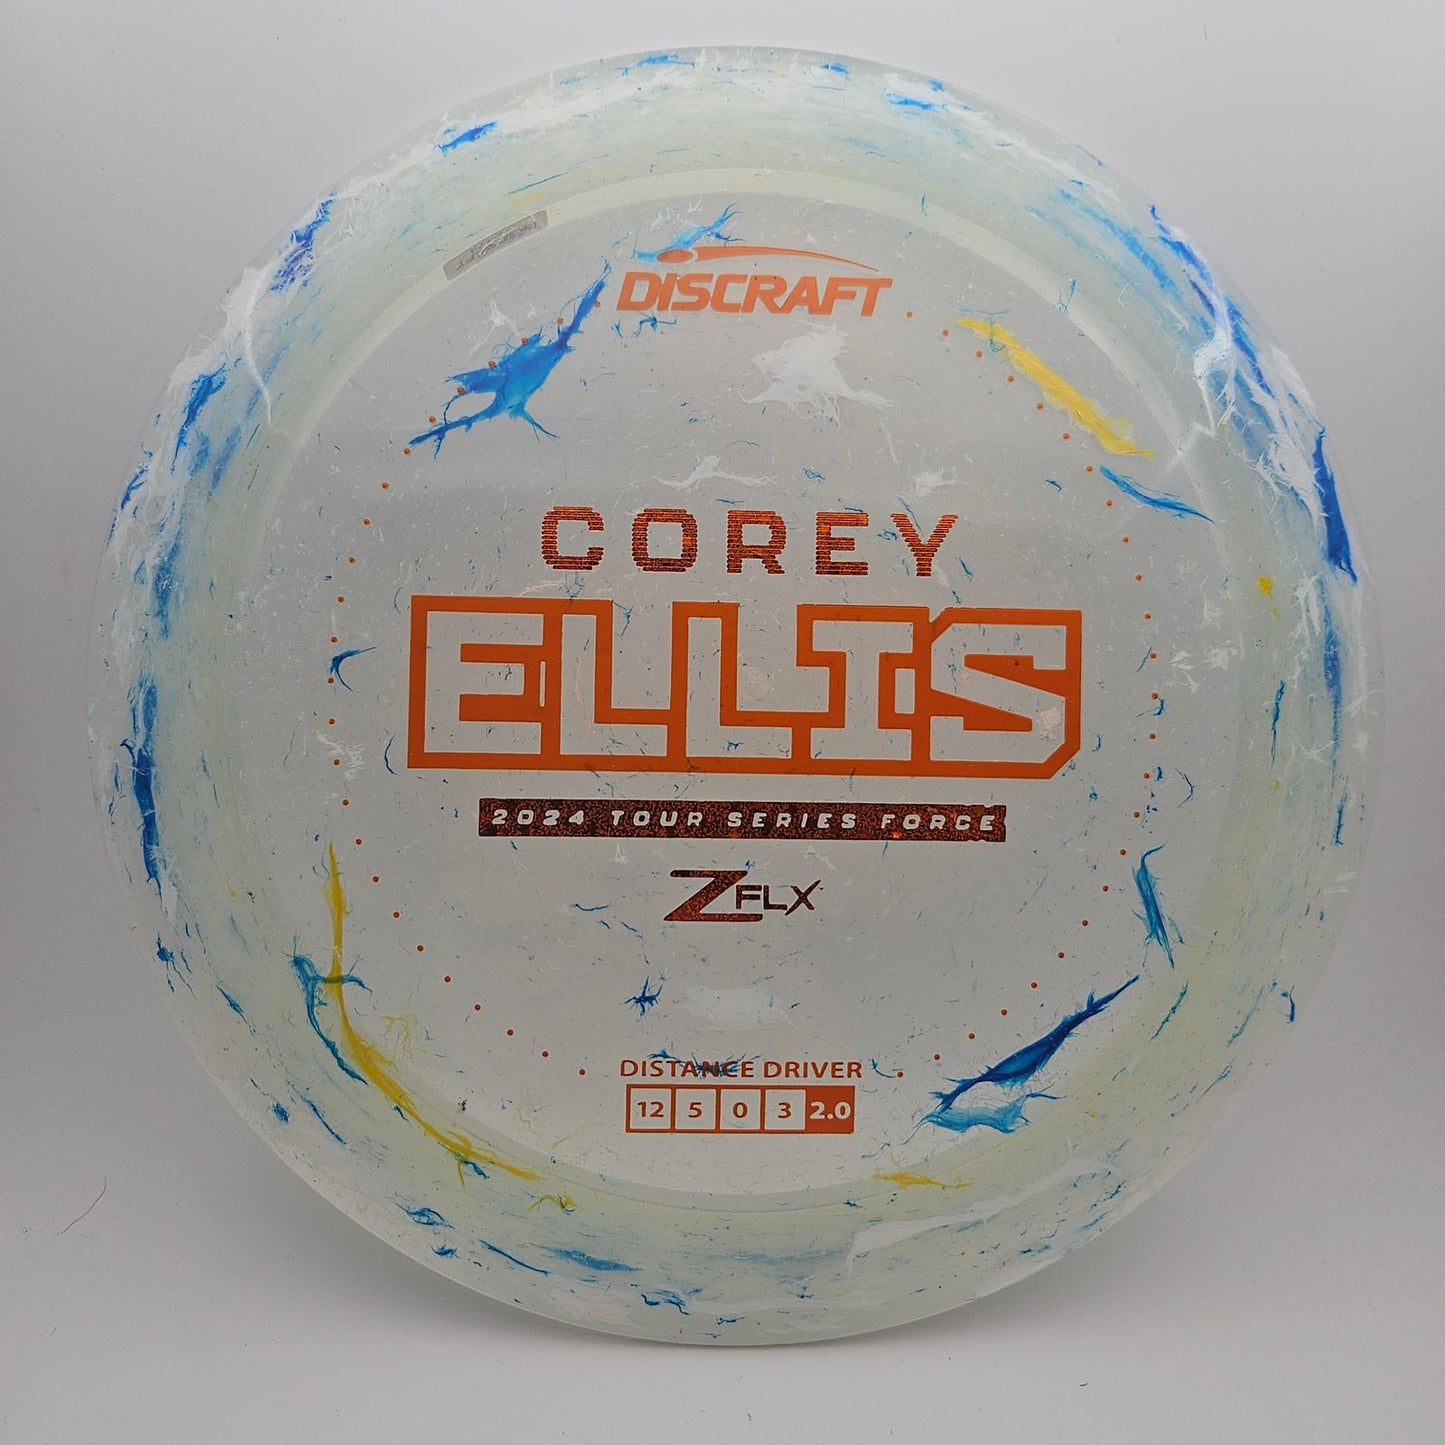 #5126 173-174g White, Corey Ellis TS Jawbreaker Z Flx Force - Corey Ellis Tour Series